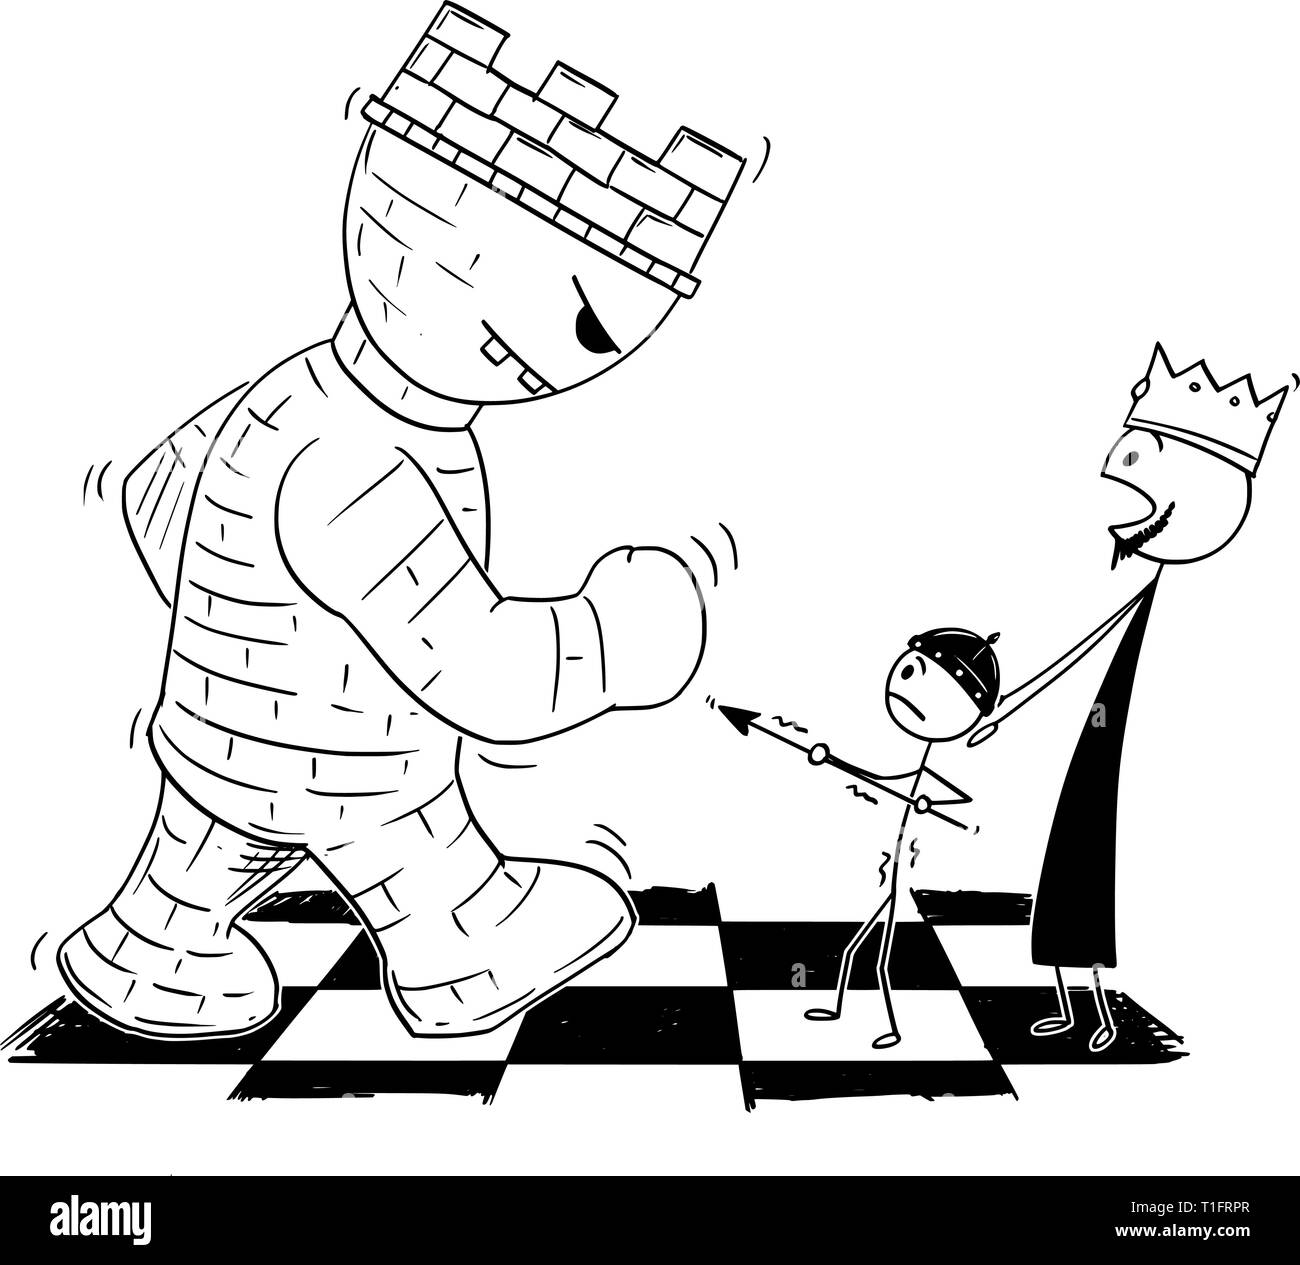 Cartoon Strichmännchen Zeichnung konzeptuelle Abbildung: schwarz Chess king gefährdet durch die riesigen Turm oder rook und Senden von kleinen Bauern in den Kampf um ihn zu verteidigen. Metapher der Macht und Verantwortung. Stock Vektor